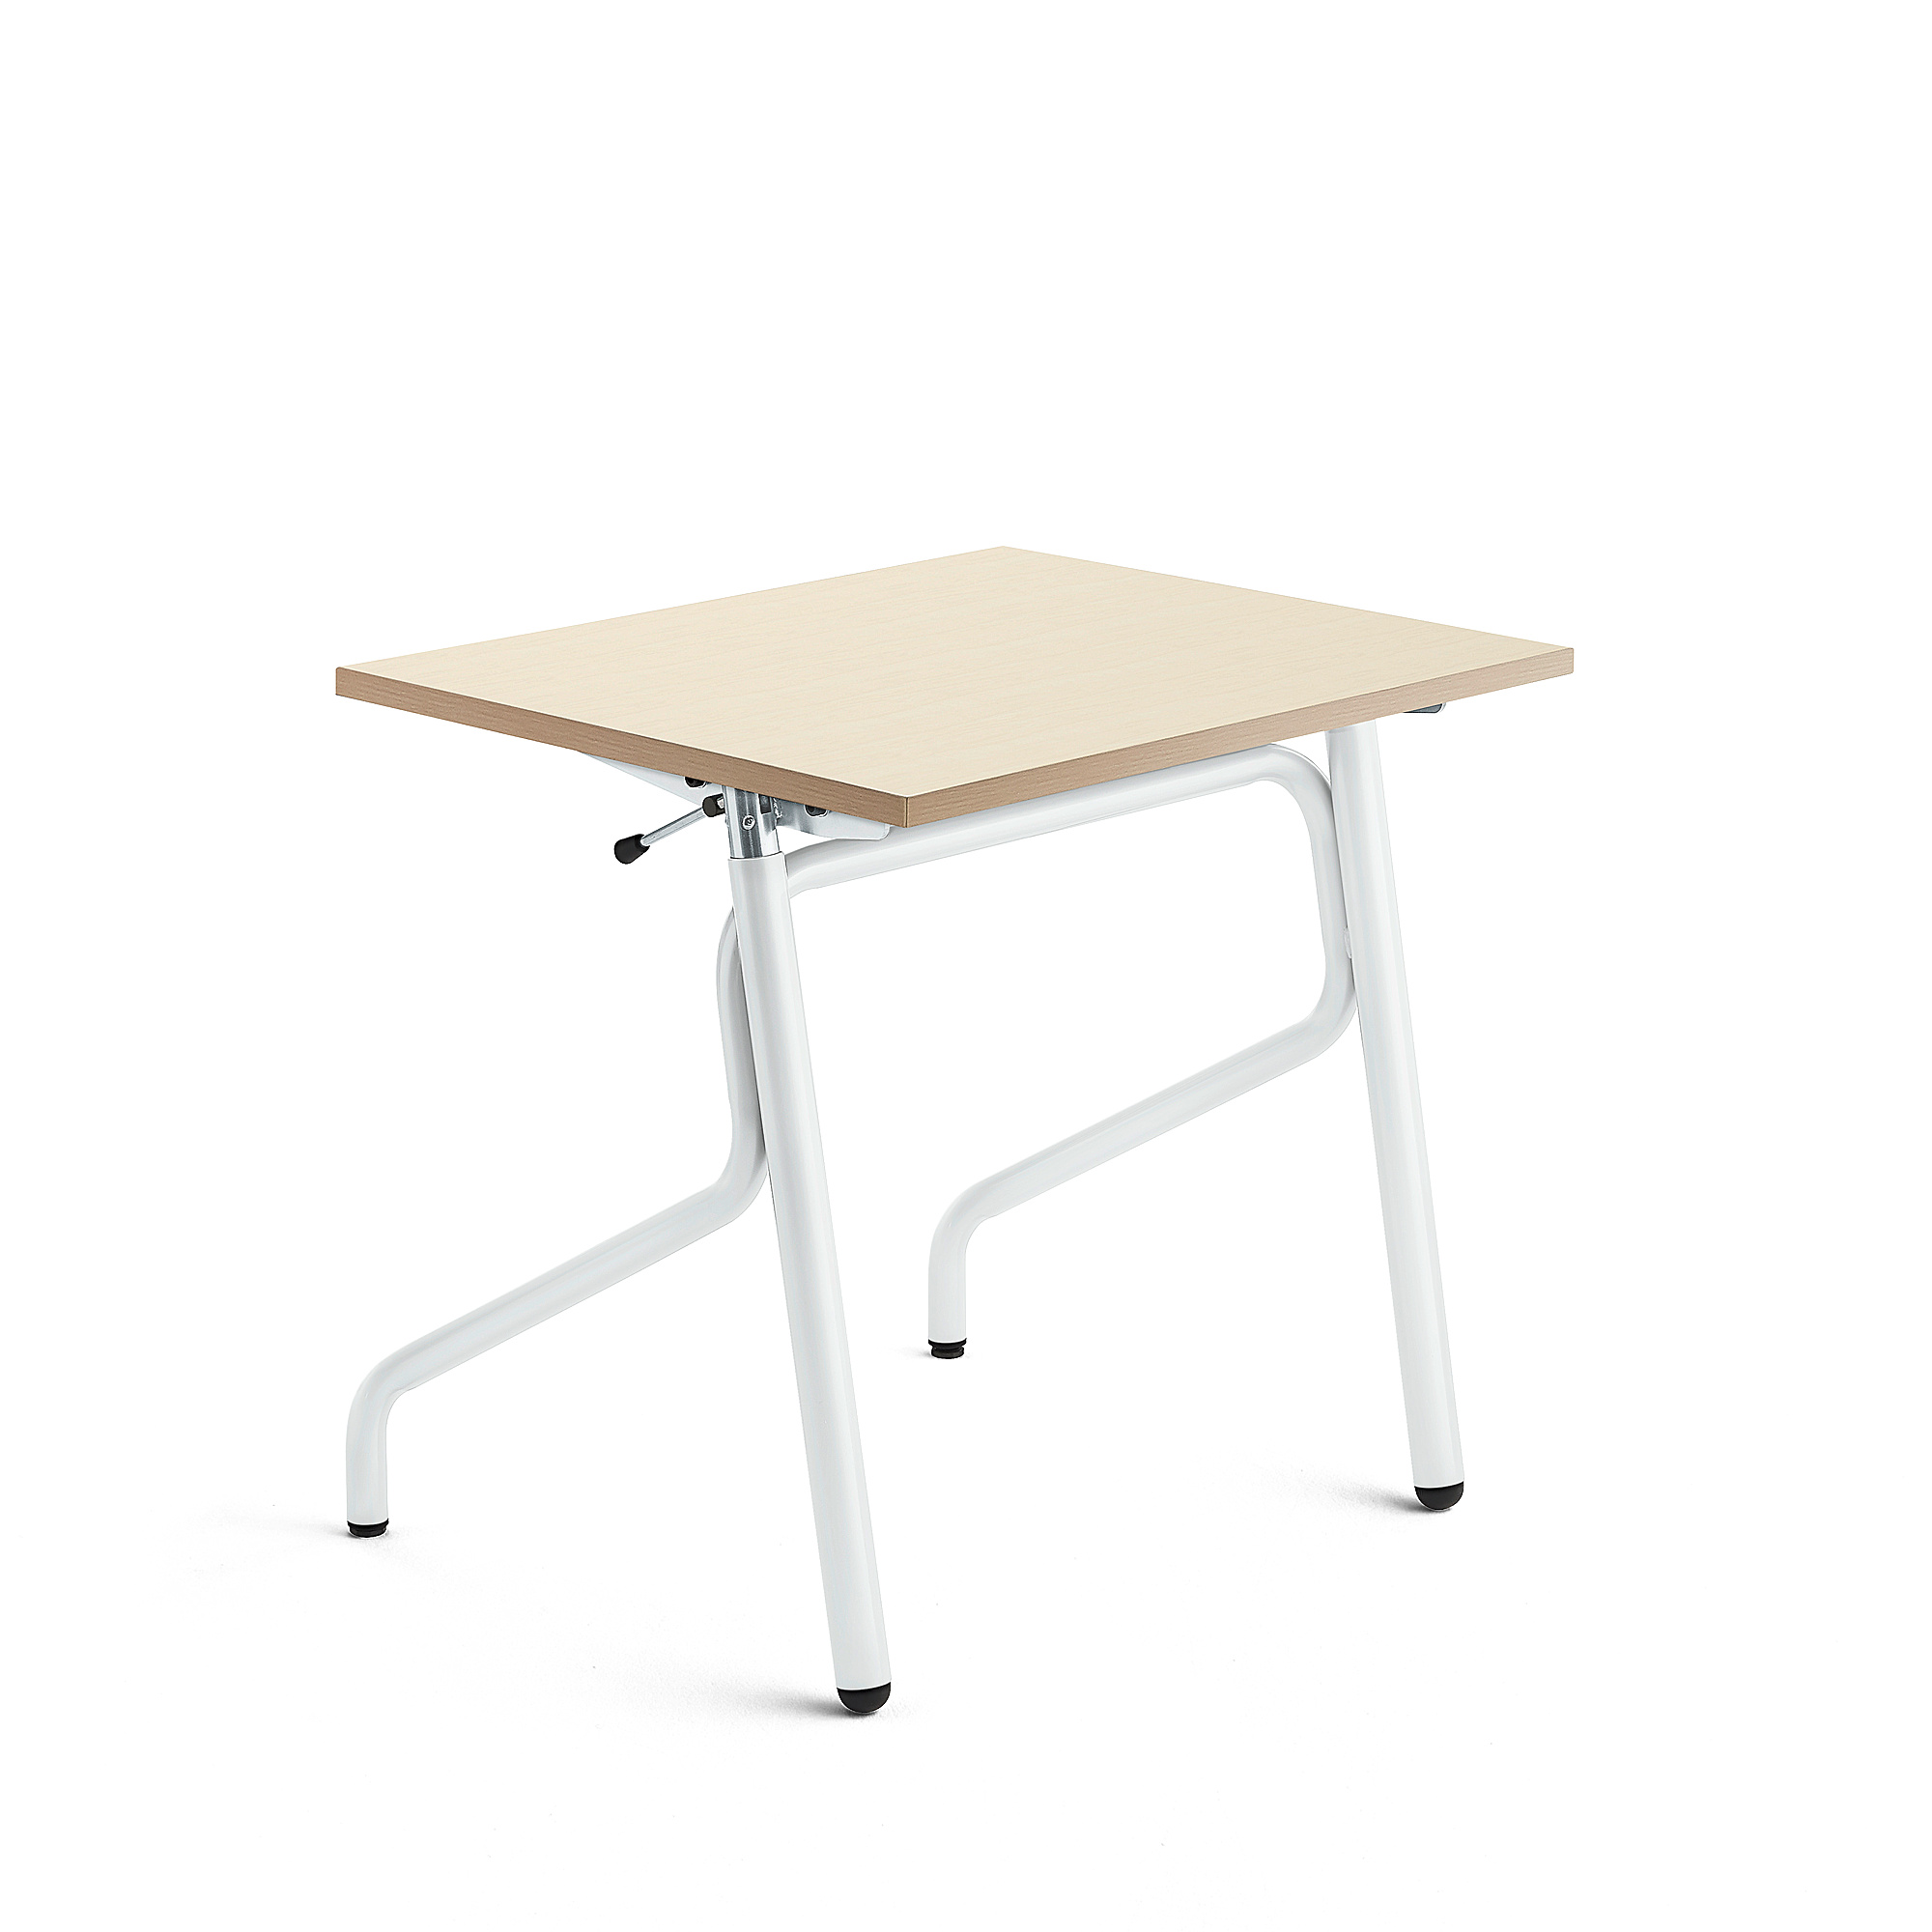 Školní lavice ADJUST, výškově nastavitelná, 700x600 mm, HPL deska, bříza, bílá